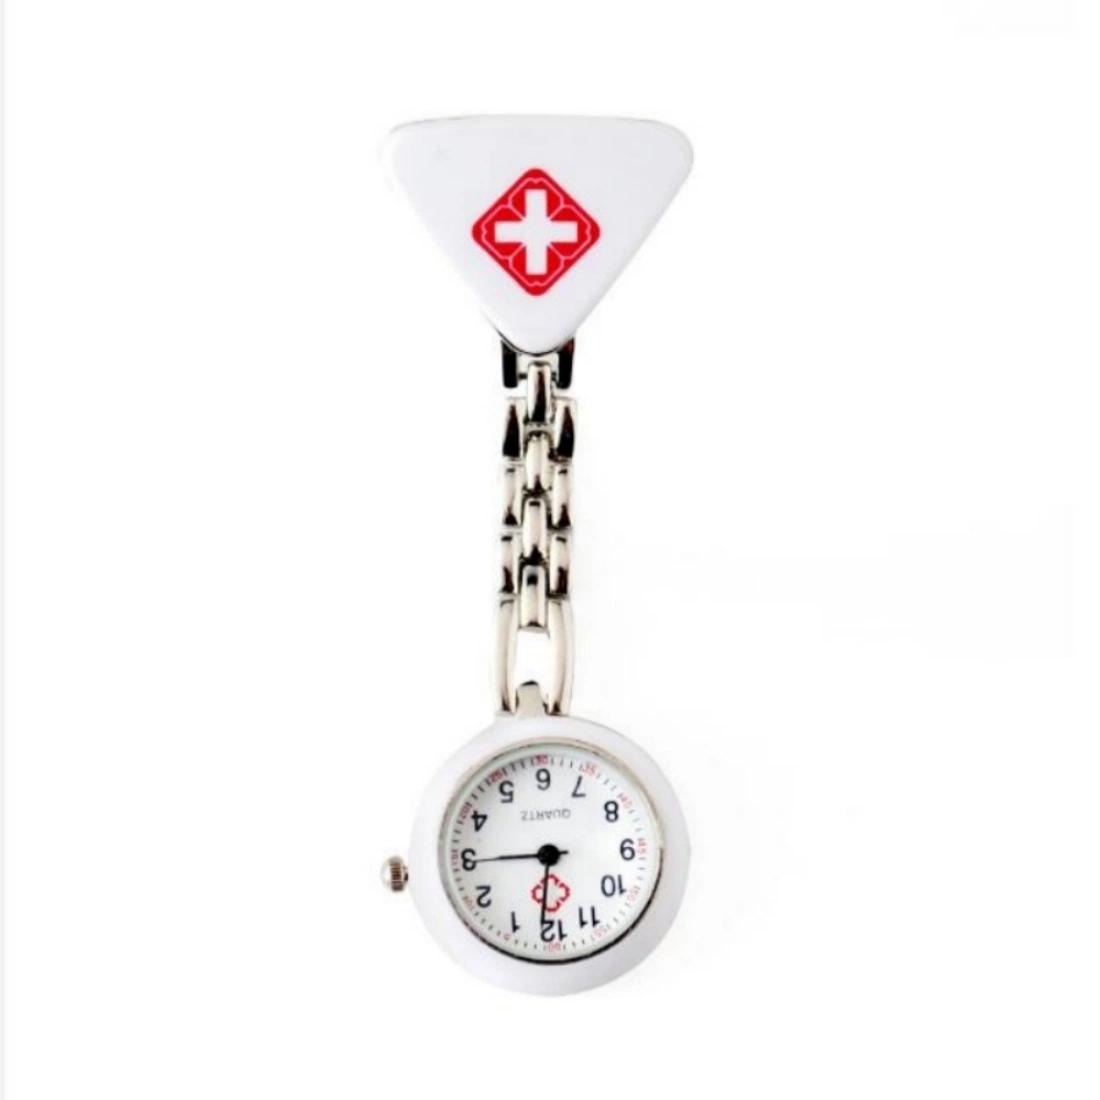 Relógio de bolso para enfermeiras, criativo e simples, com triângulo.